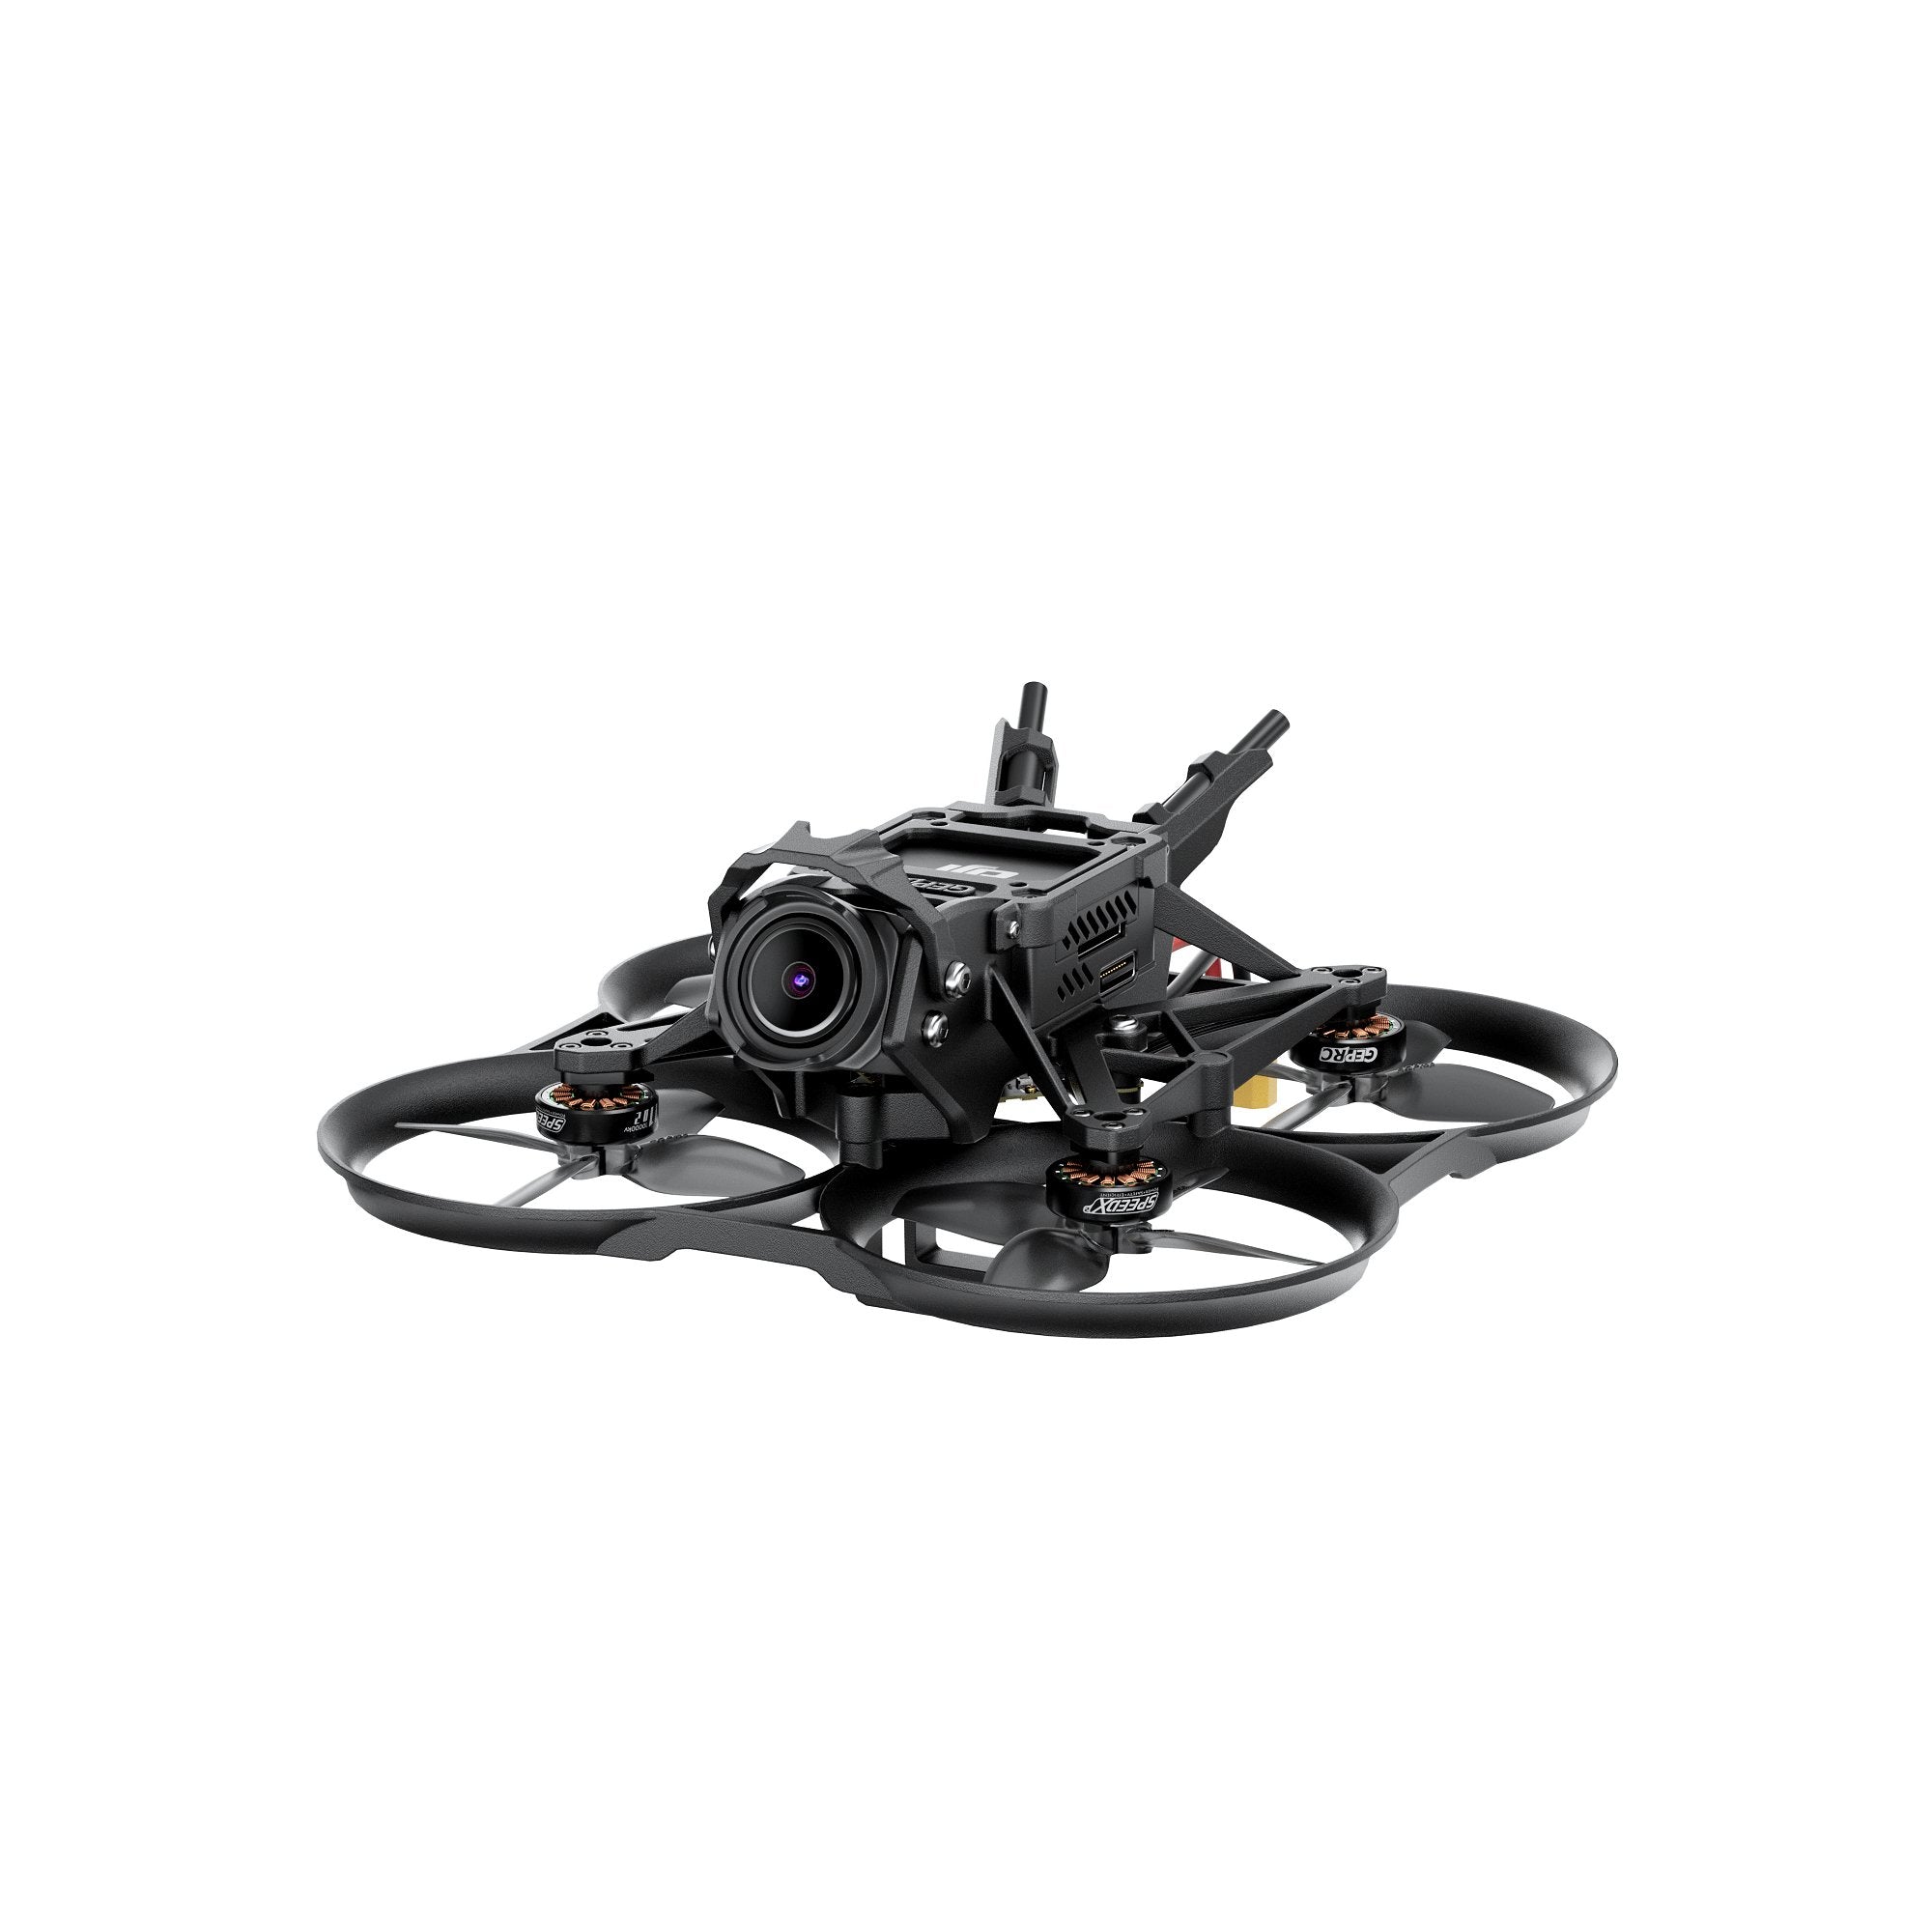 Pico X Micro Drone (RTF) – Redux Air